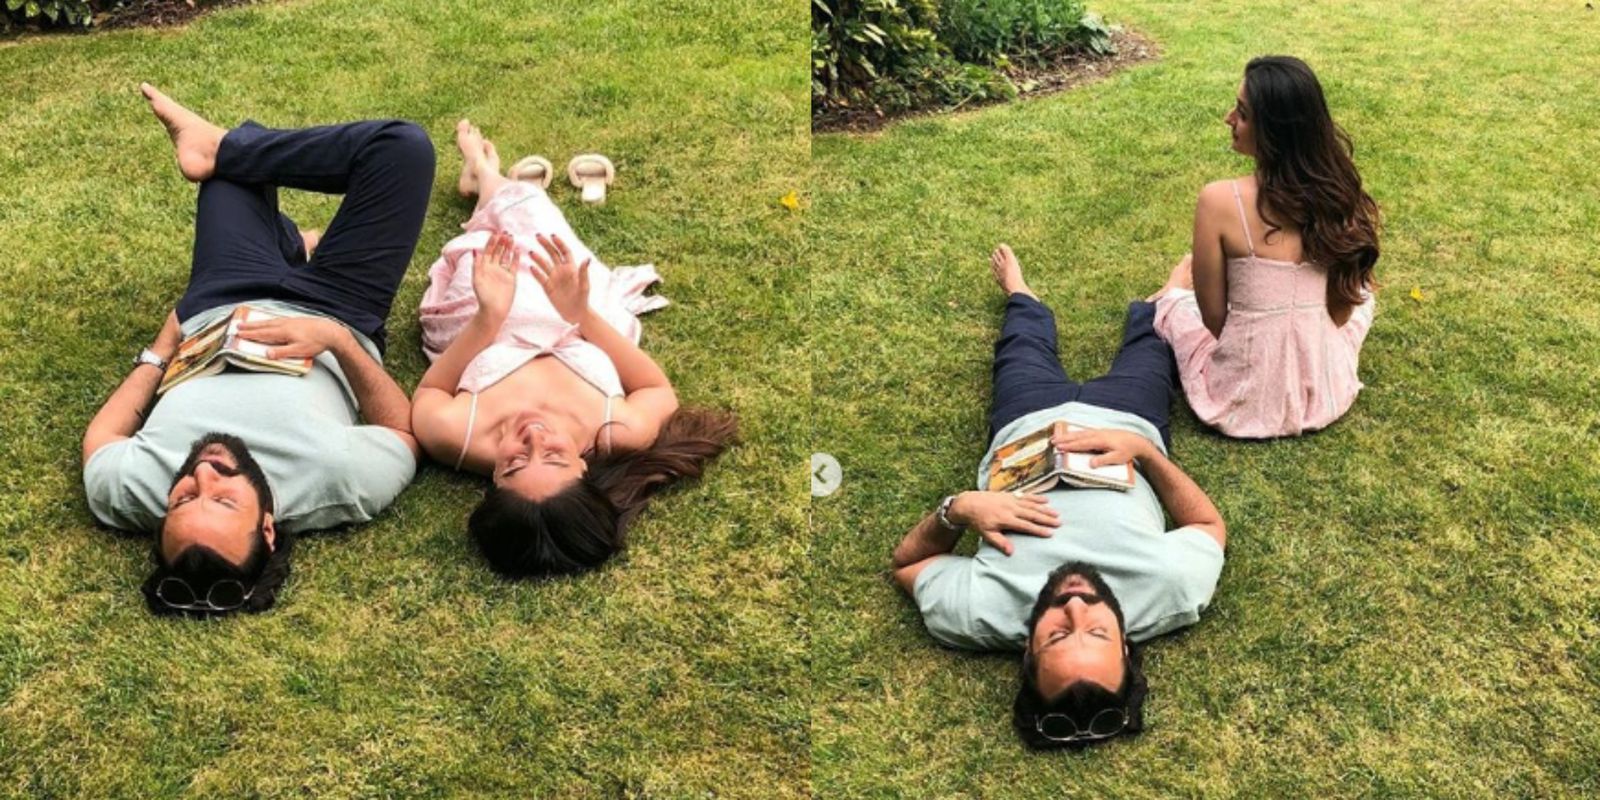 करीना ने शेयर की सैफ के साथ की ये रोमांटिक तस्वीर, गार्डन में समय बिता रहे हैं दोनों 